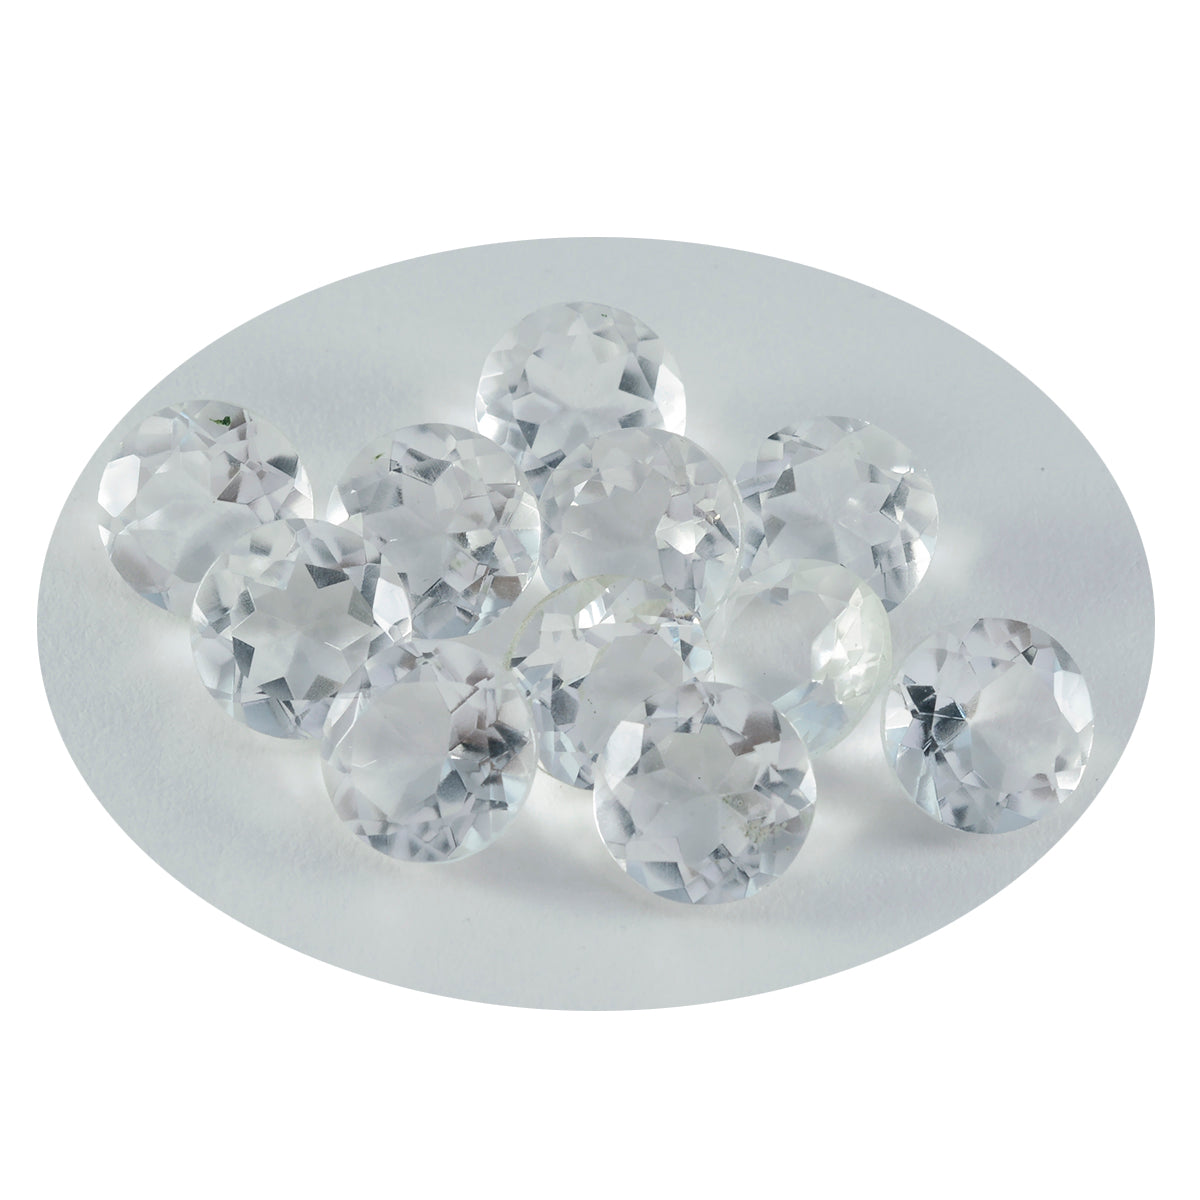 Riyogems 1 pieza de cuarzo de cristal blanco facetado 10x10 mm forma redonda piedra suelta de calidad A+